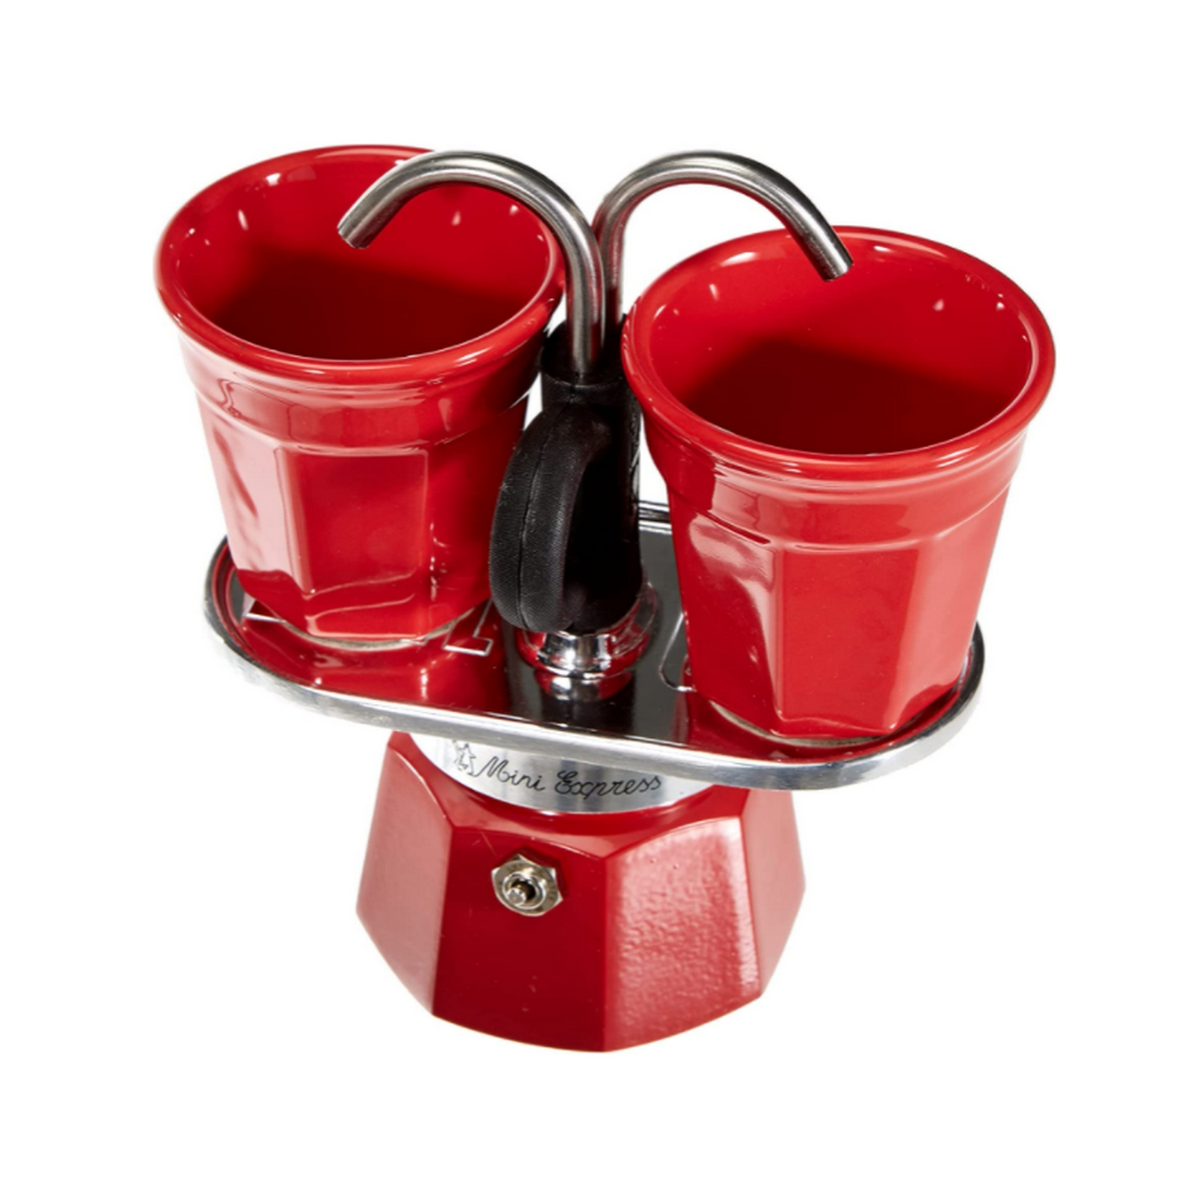 2 2TZ Espressokocher RED R BIALETTI Rot Mini Tassen Set für